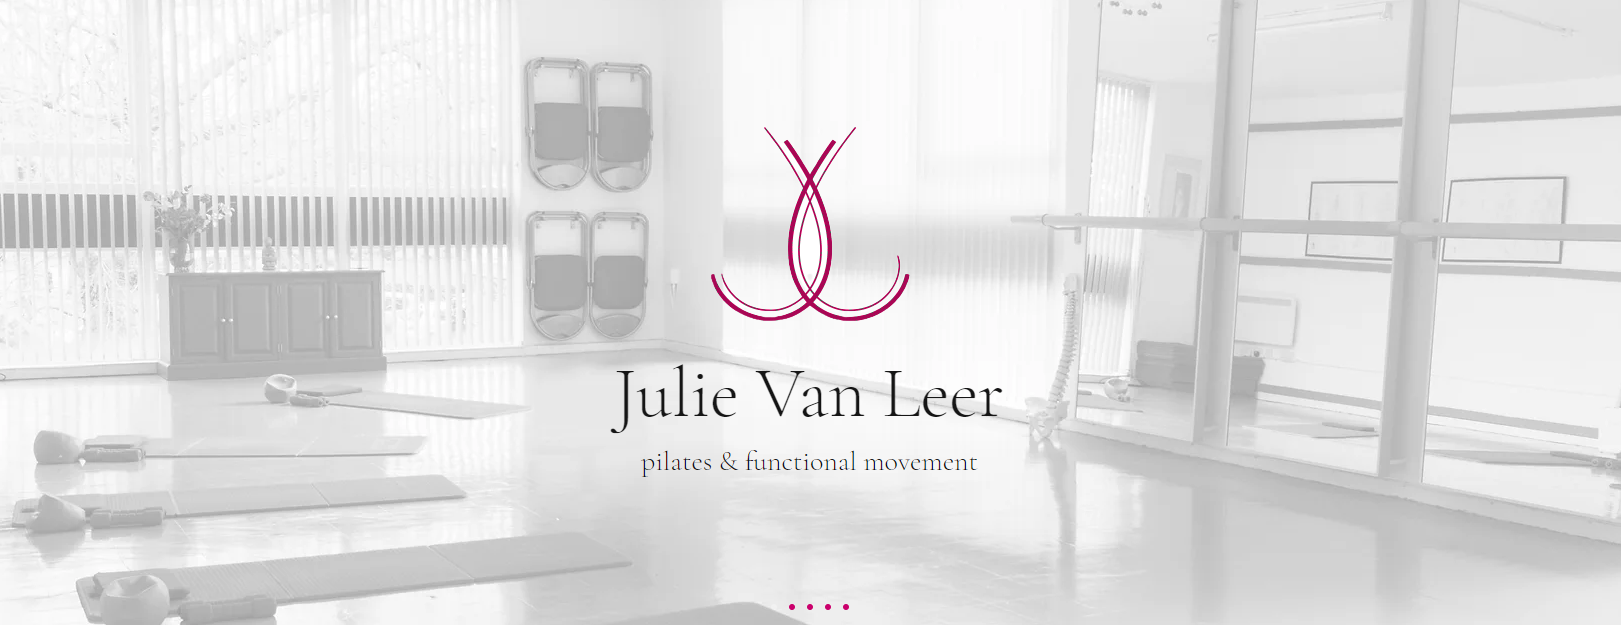 Pilates Retreat with Julie Van Leer